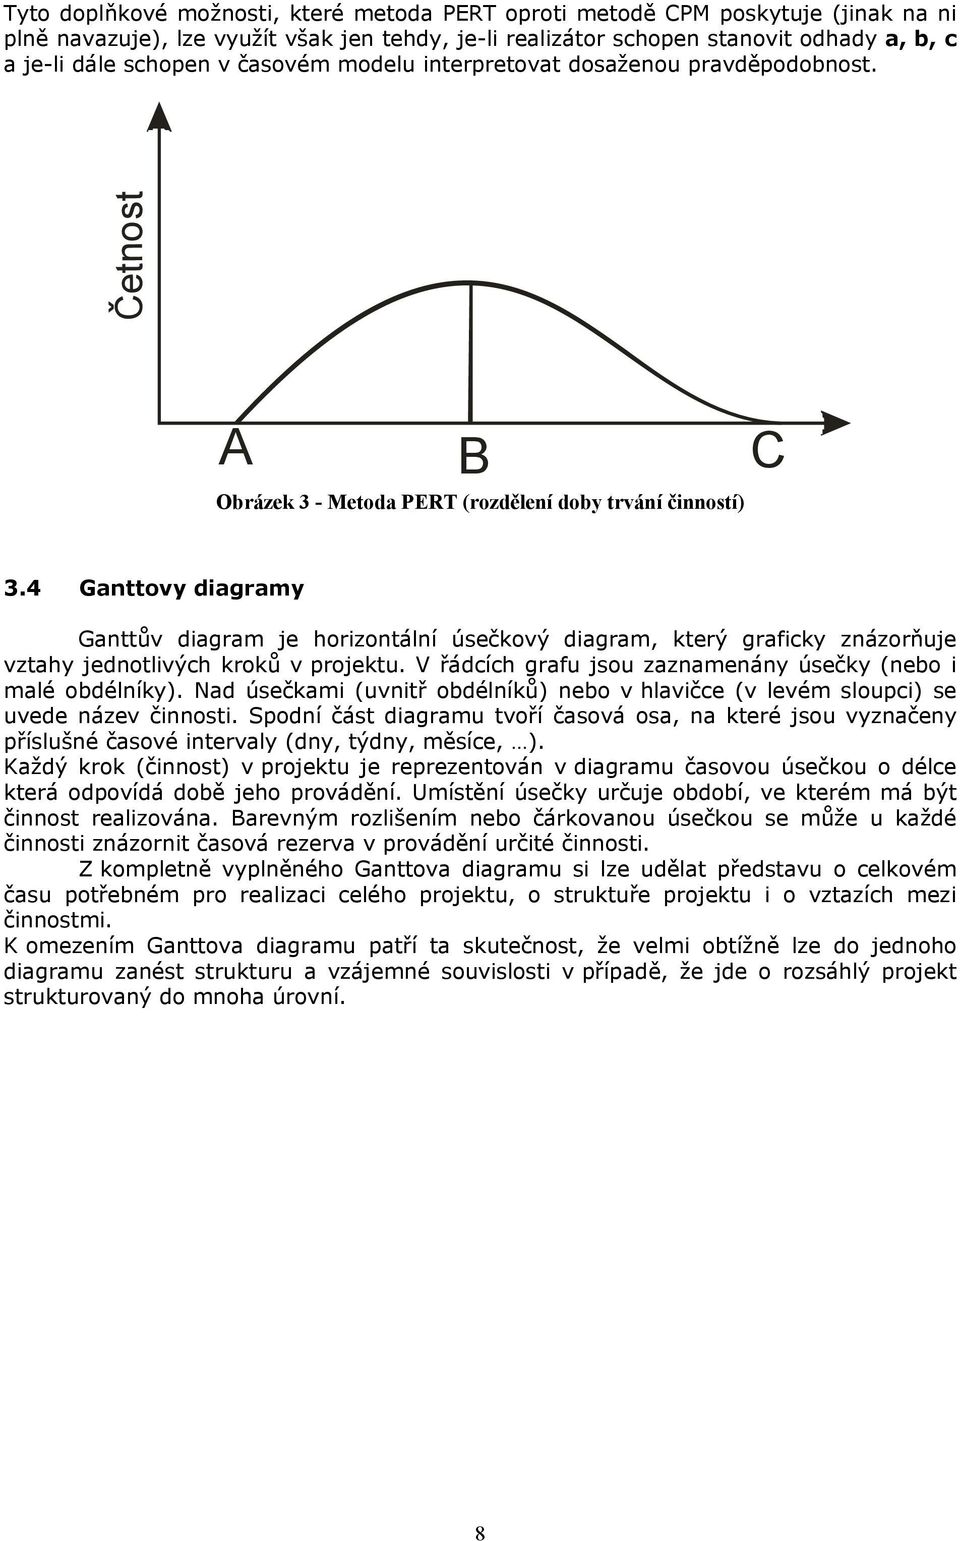 4 Ganttovy diagramy Ganttův diagram je horizontální úsečkový diagram, který graficky znázorňuje vztahy jednotlivých kroků v projektu. V řádcích grafu jsou zaznamenány úsečky (nebo i malé obdélníky).